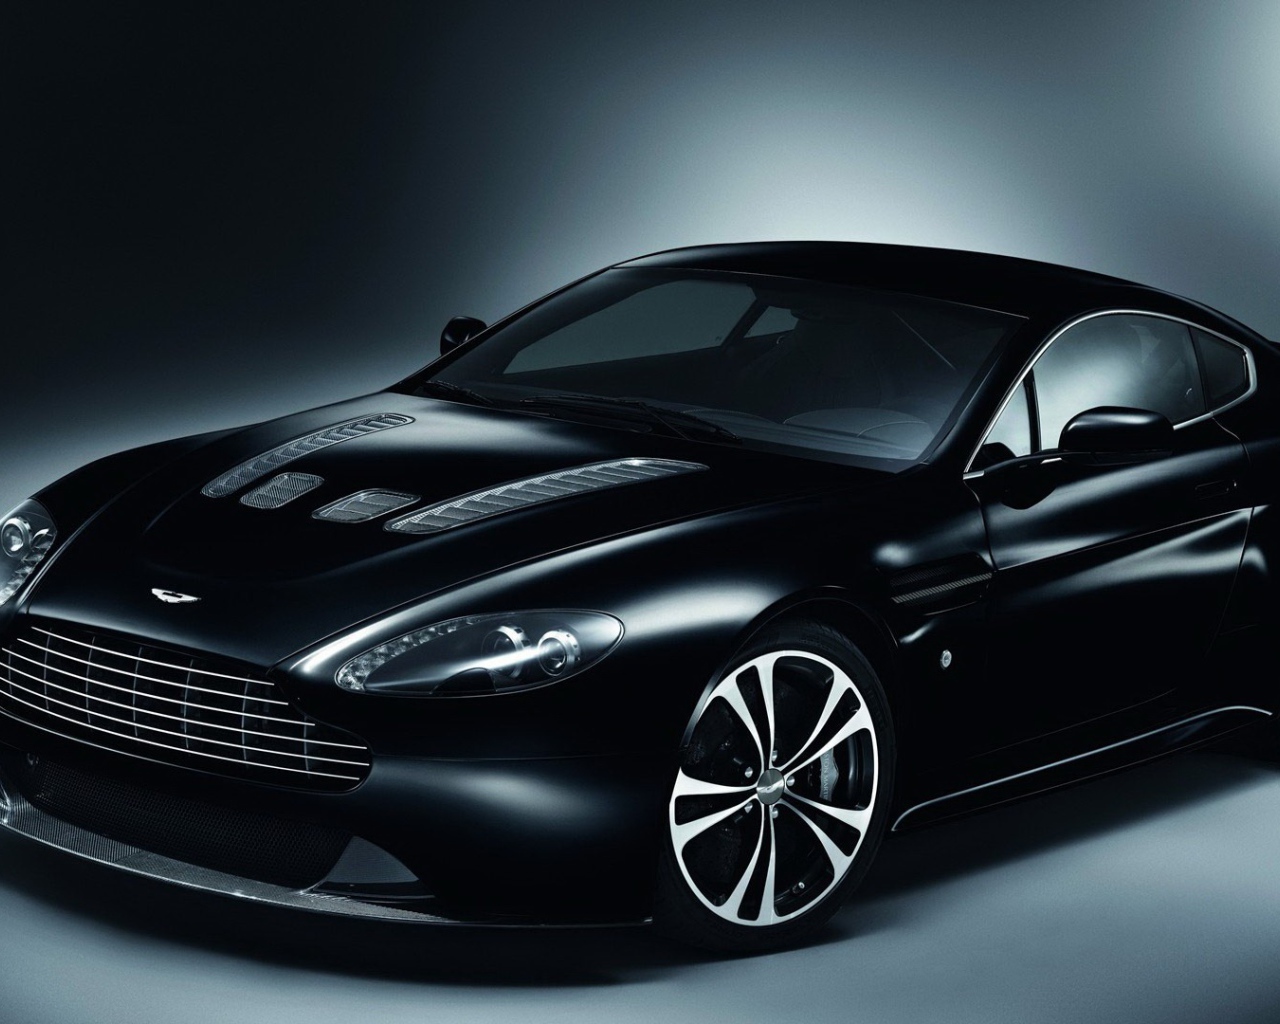 Gorgeous Black Aston Martin